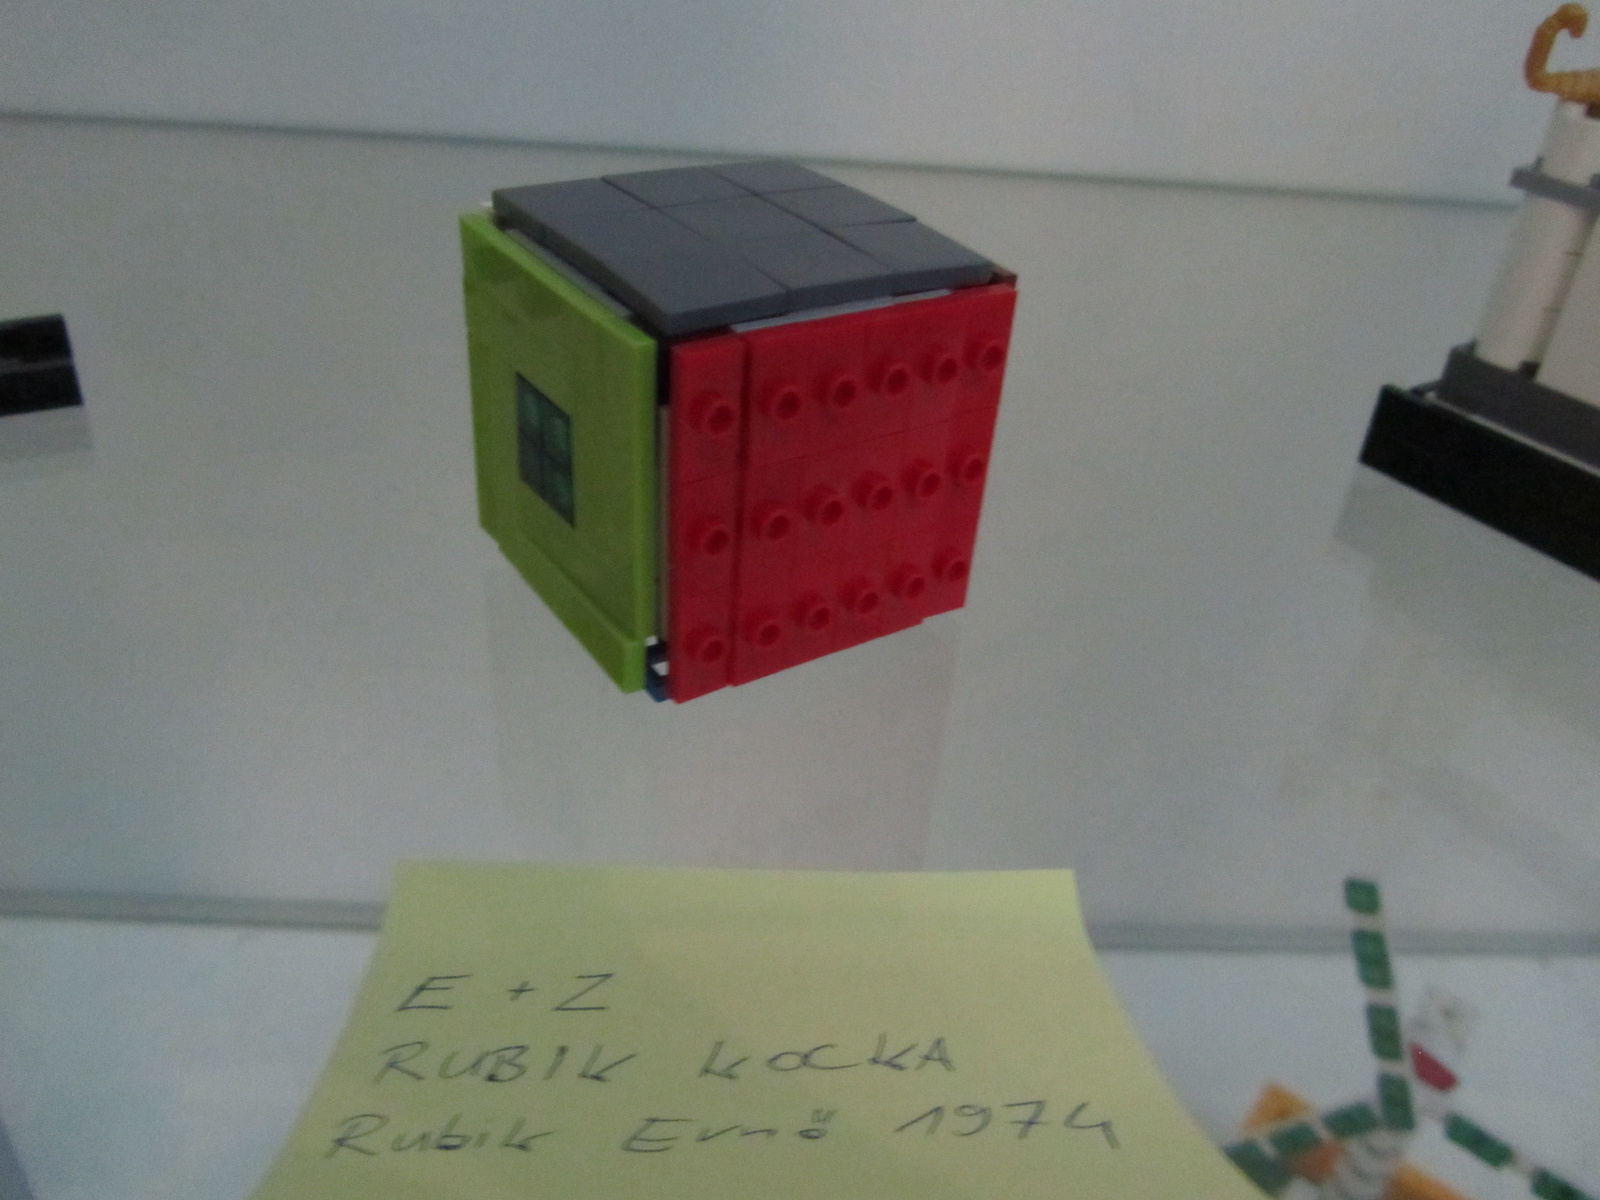 E+Z - Rubik kocka